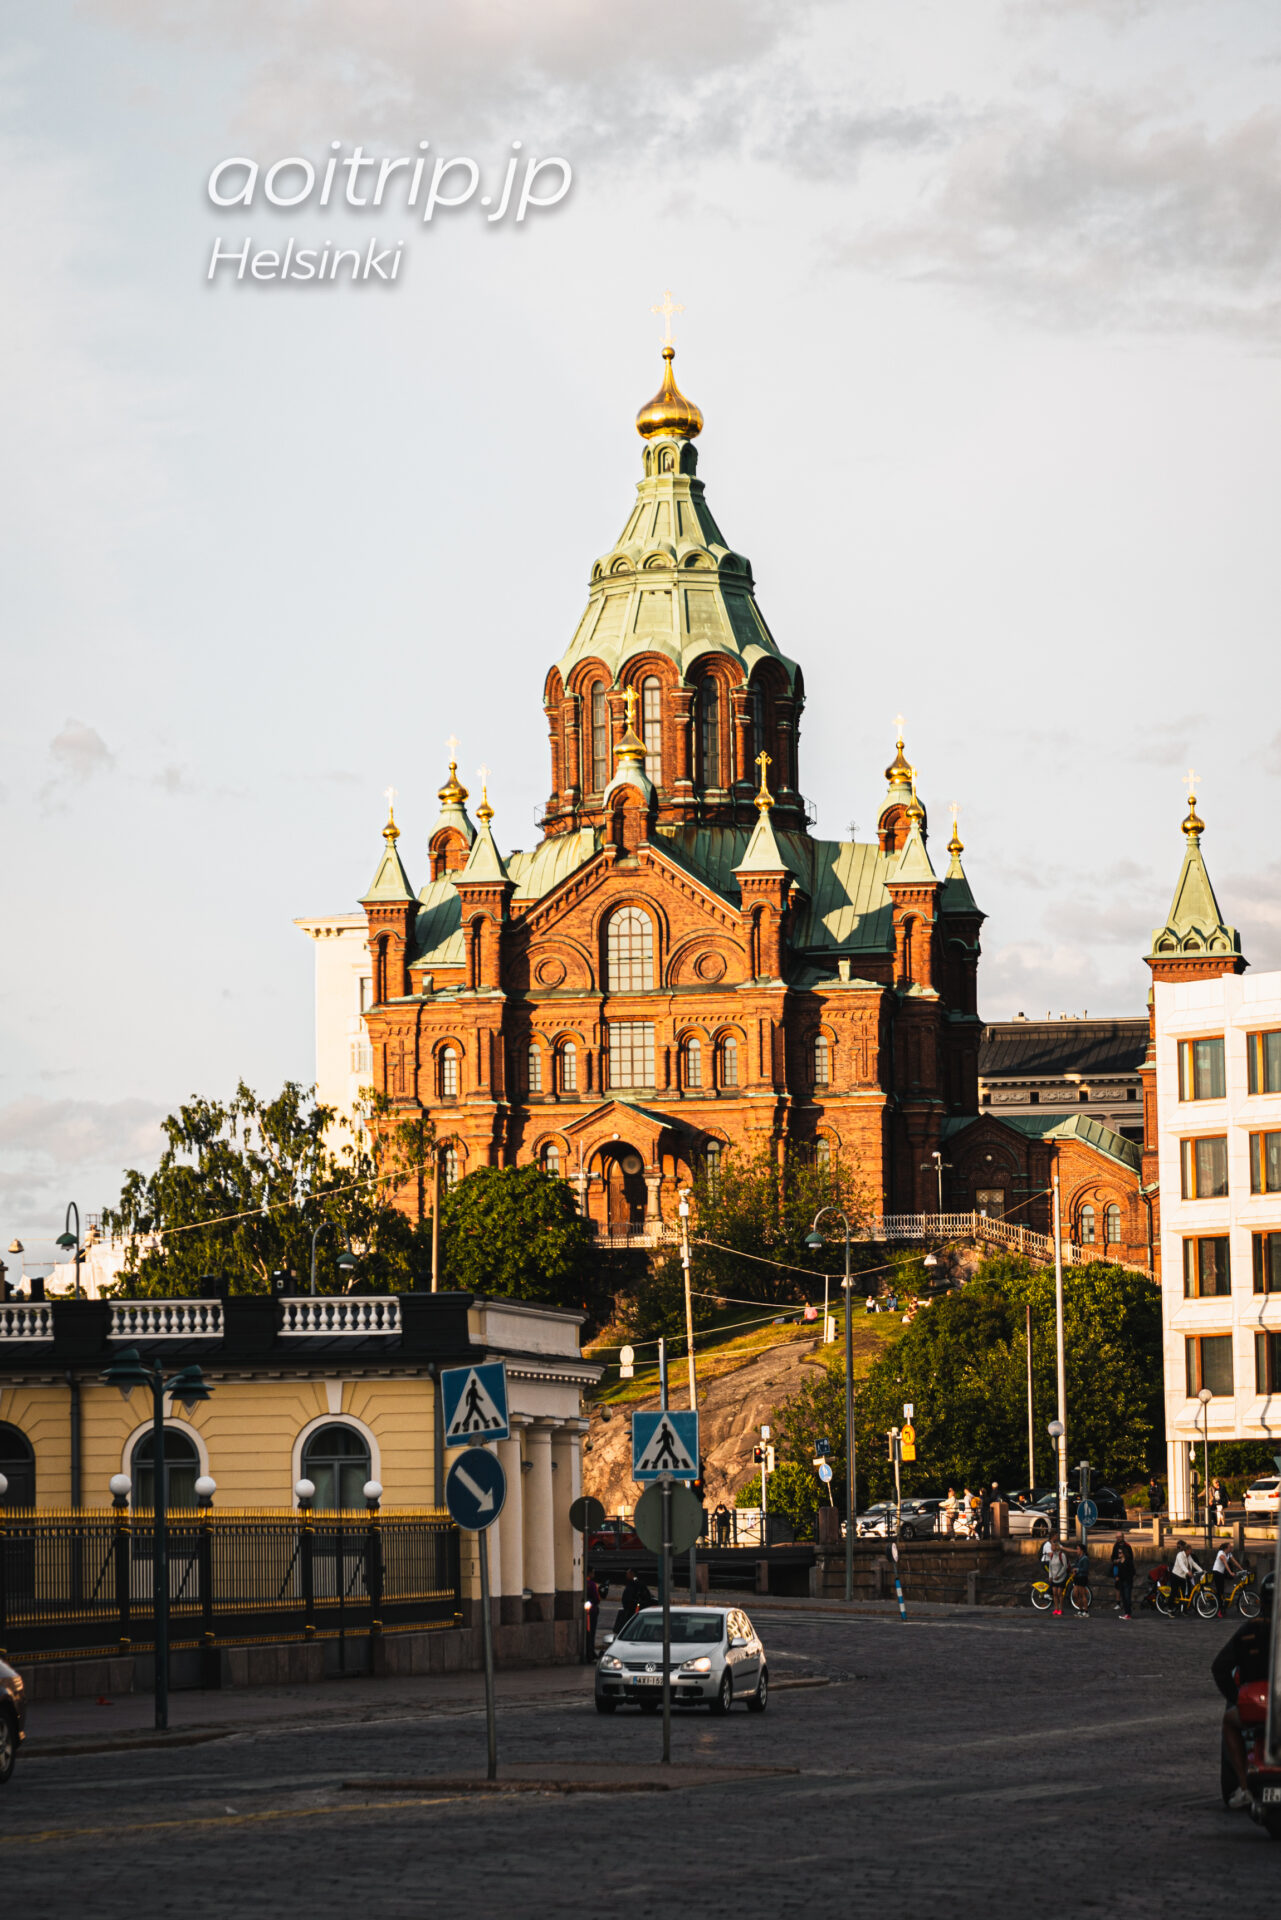 ヘルシンキの生神女就寝大聖堂 ウスペンスキー大聖堂